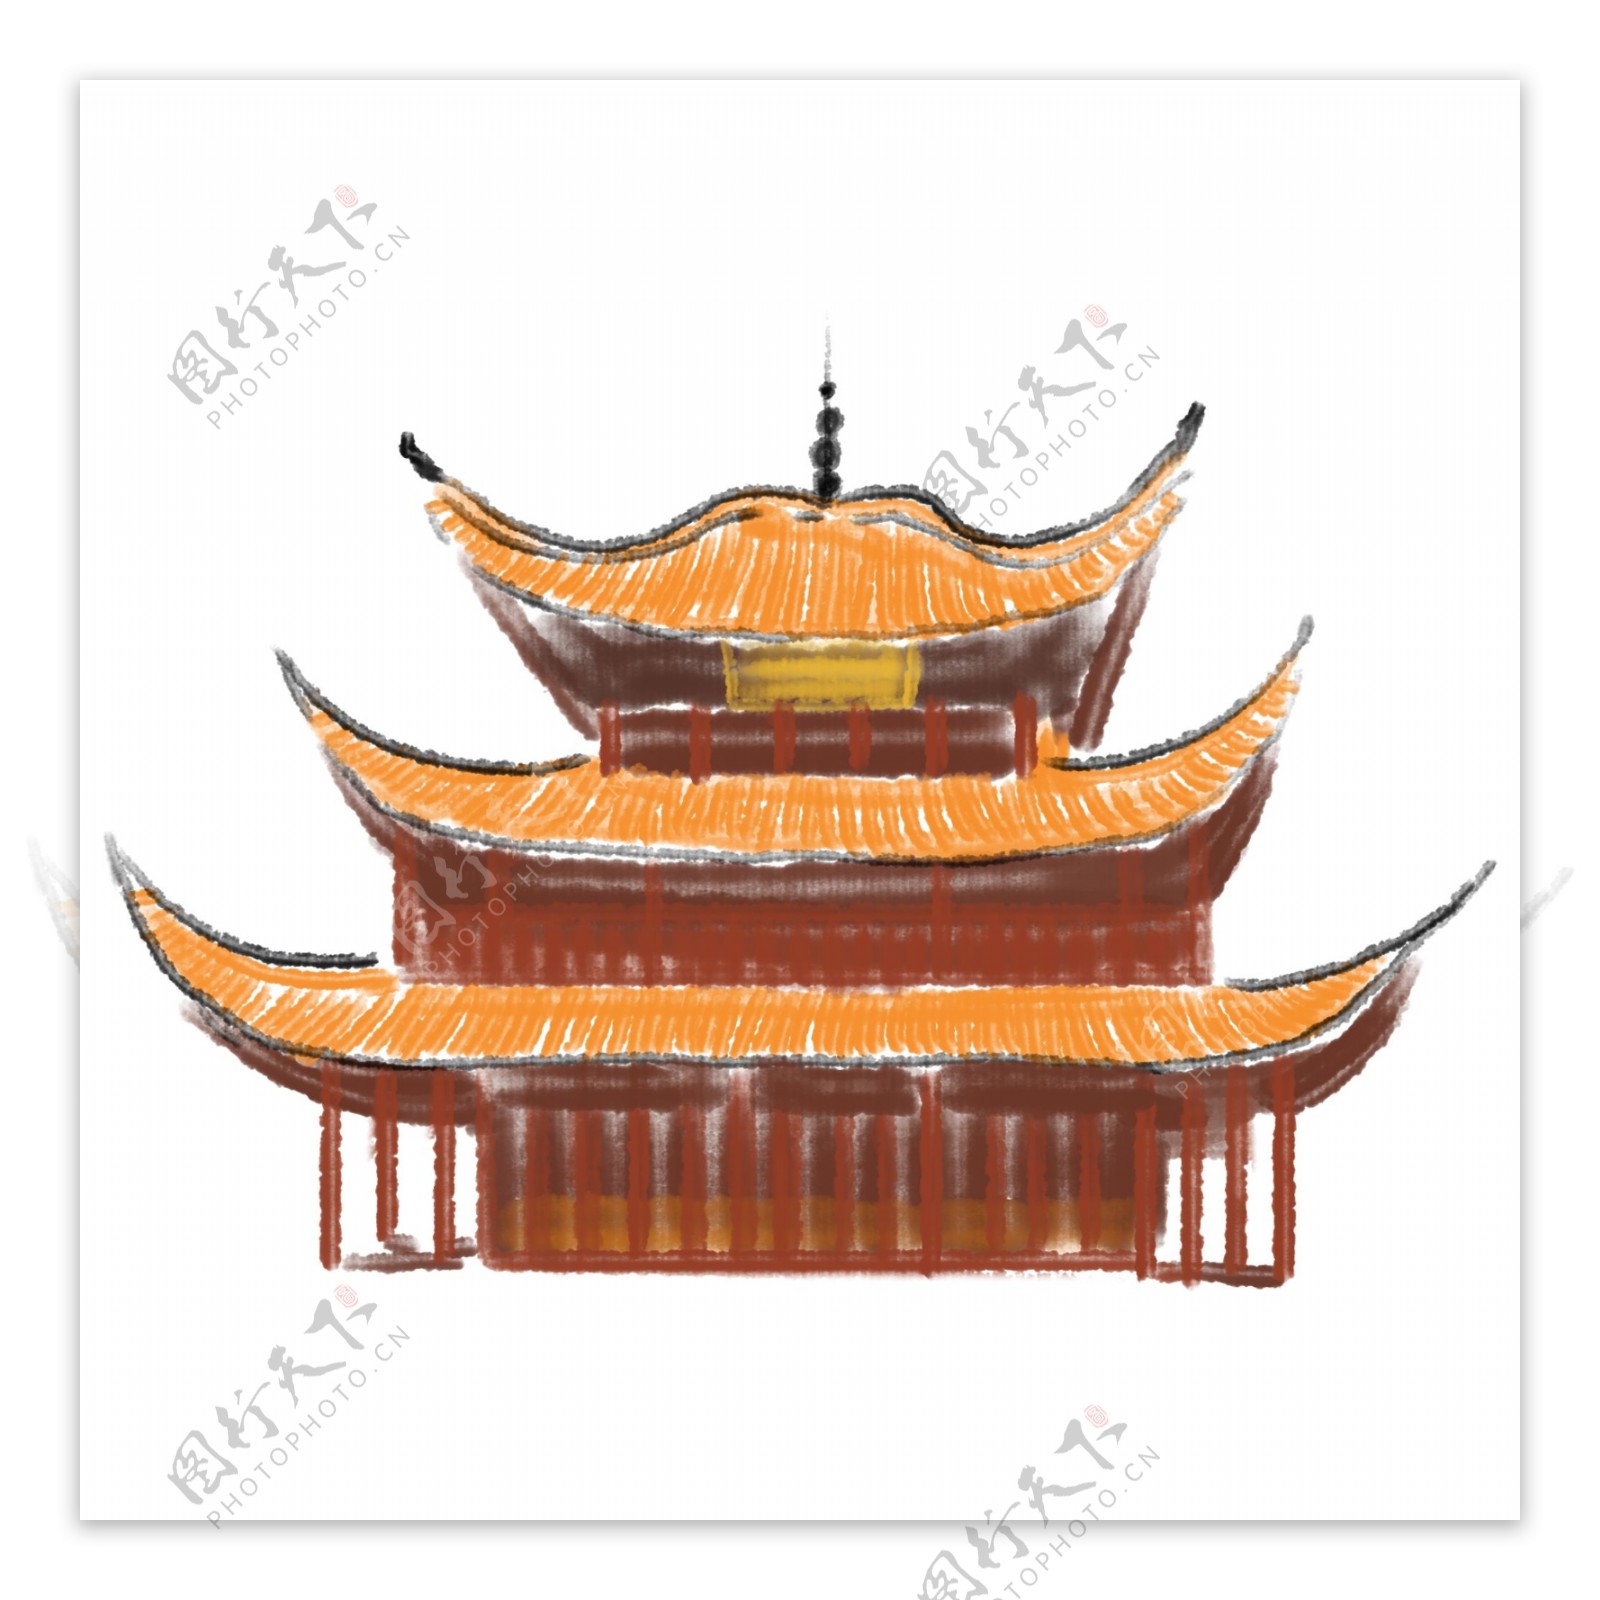 水墨中国古建筑插画